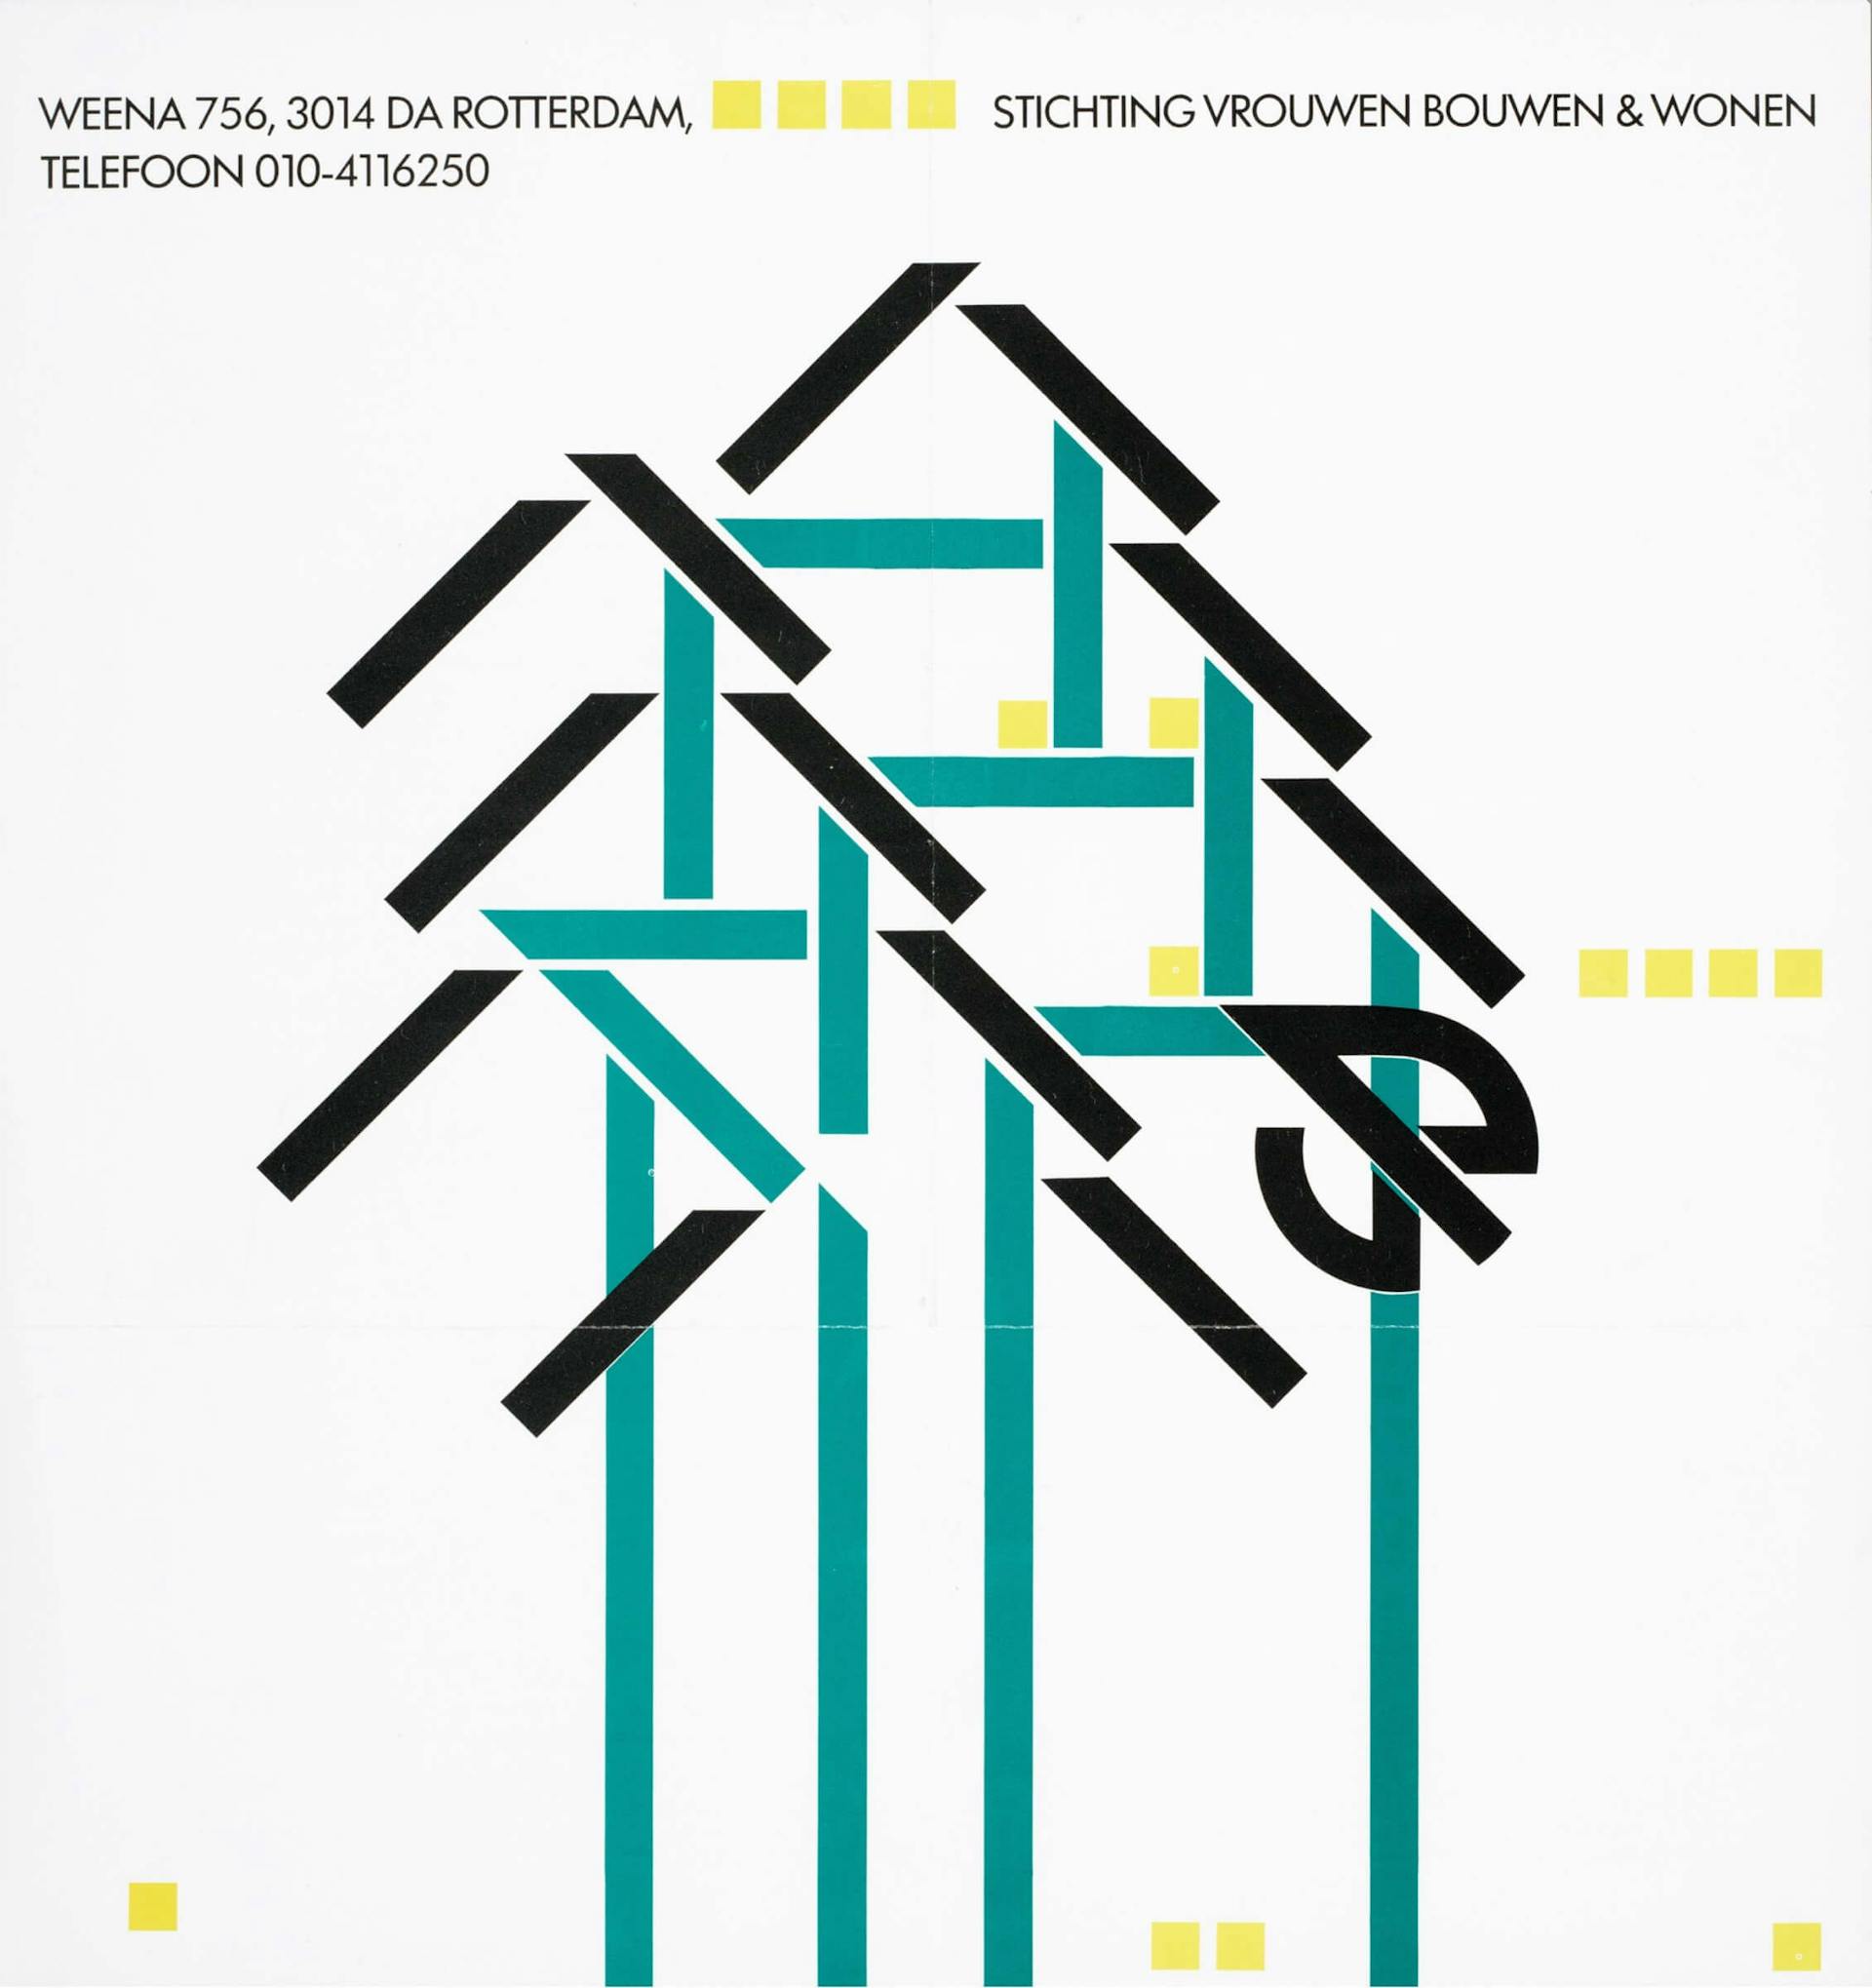 Advertisement Stichting Vrouwen Bouwen Wonen [Women Building Housing Foundation], Rotterdam, 1986, design: unknown. Source: Collection IAV-Atria 